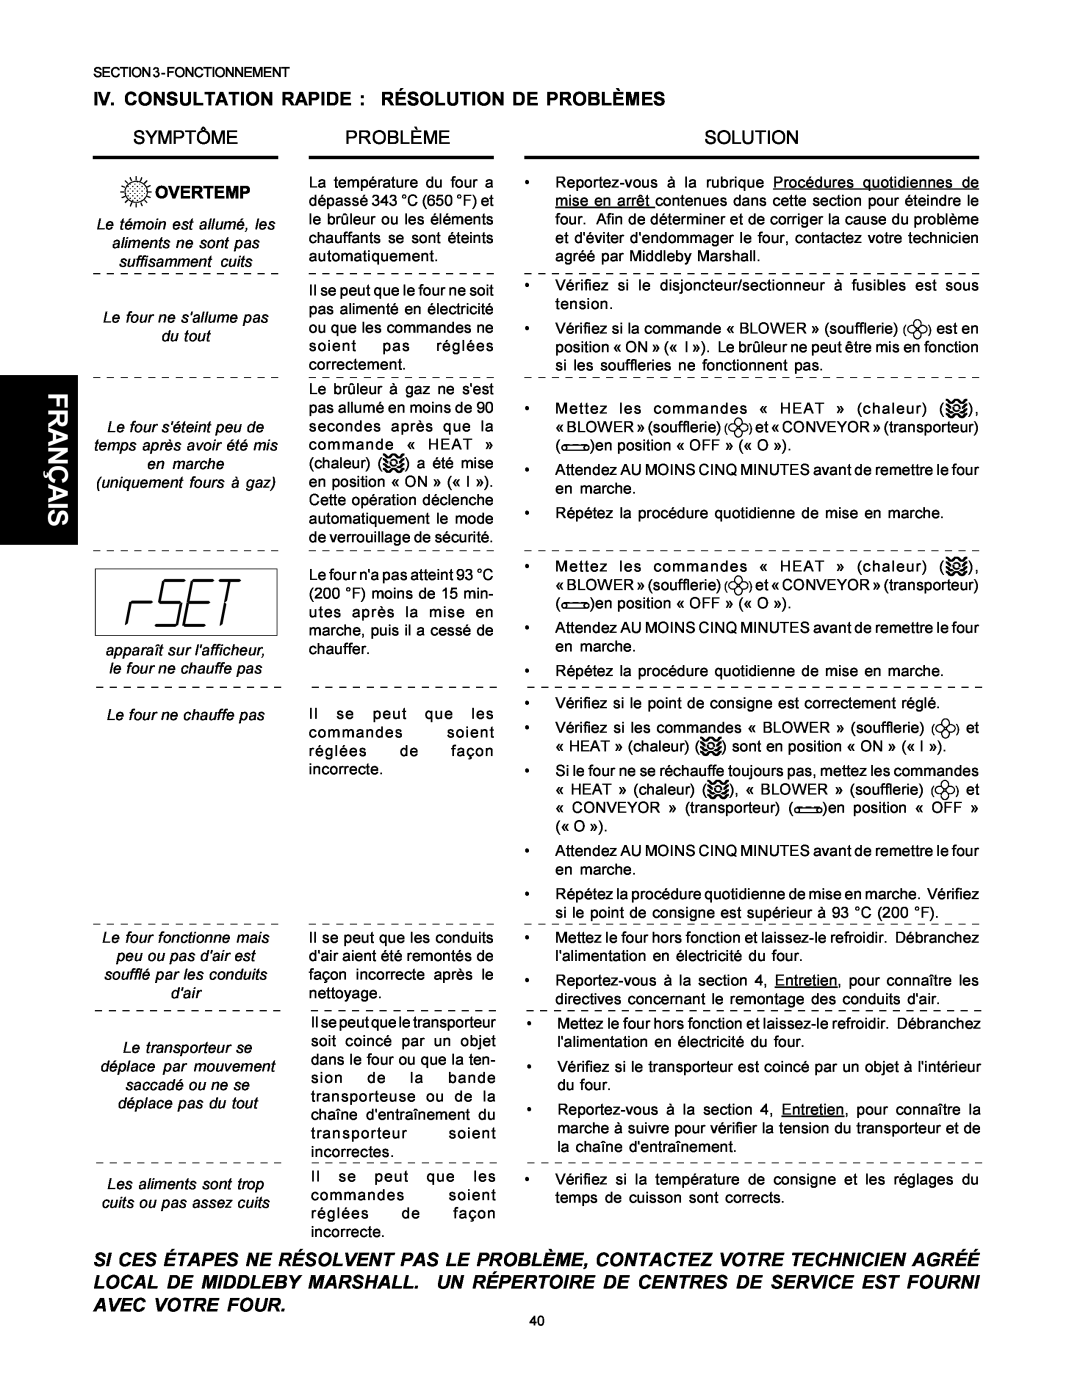 Middleby Marshall PS500 installation manual Iv. Consultation Rapide Résolution De Problèmes, Symptôme, Français, Solution 